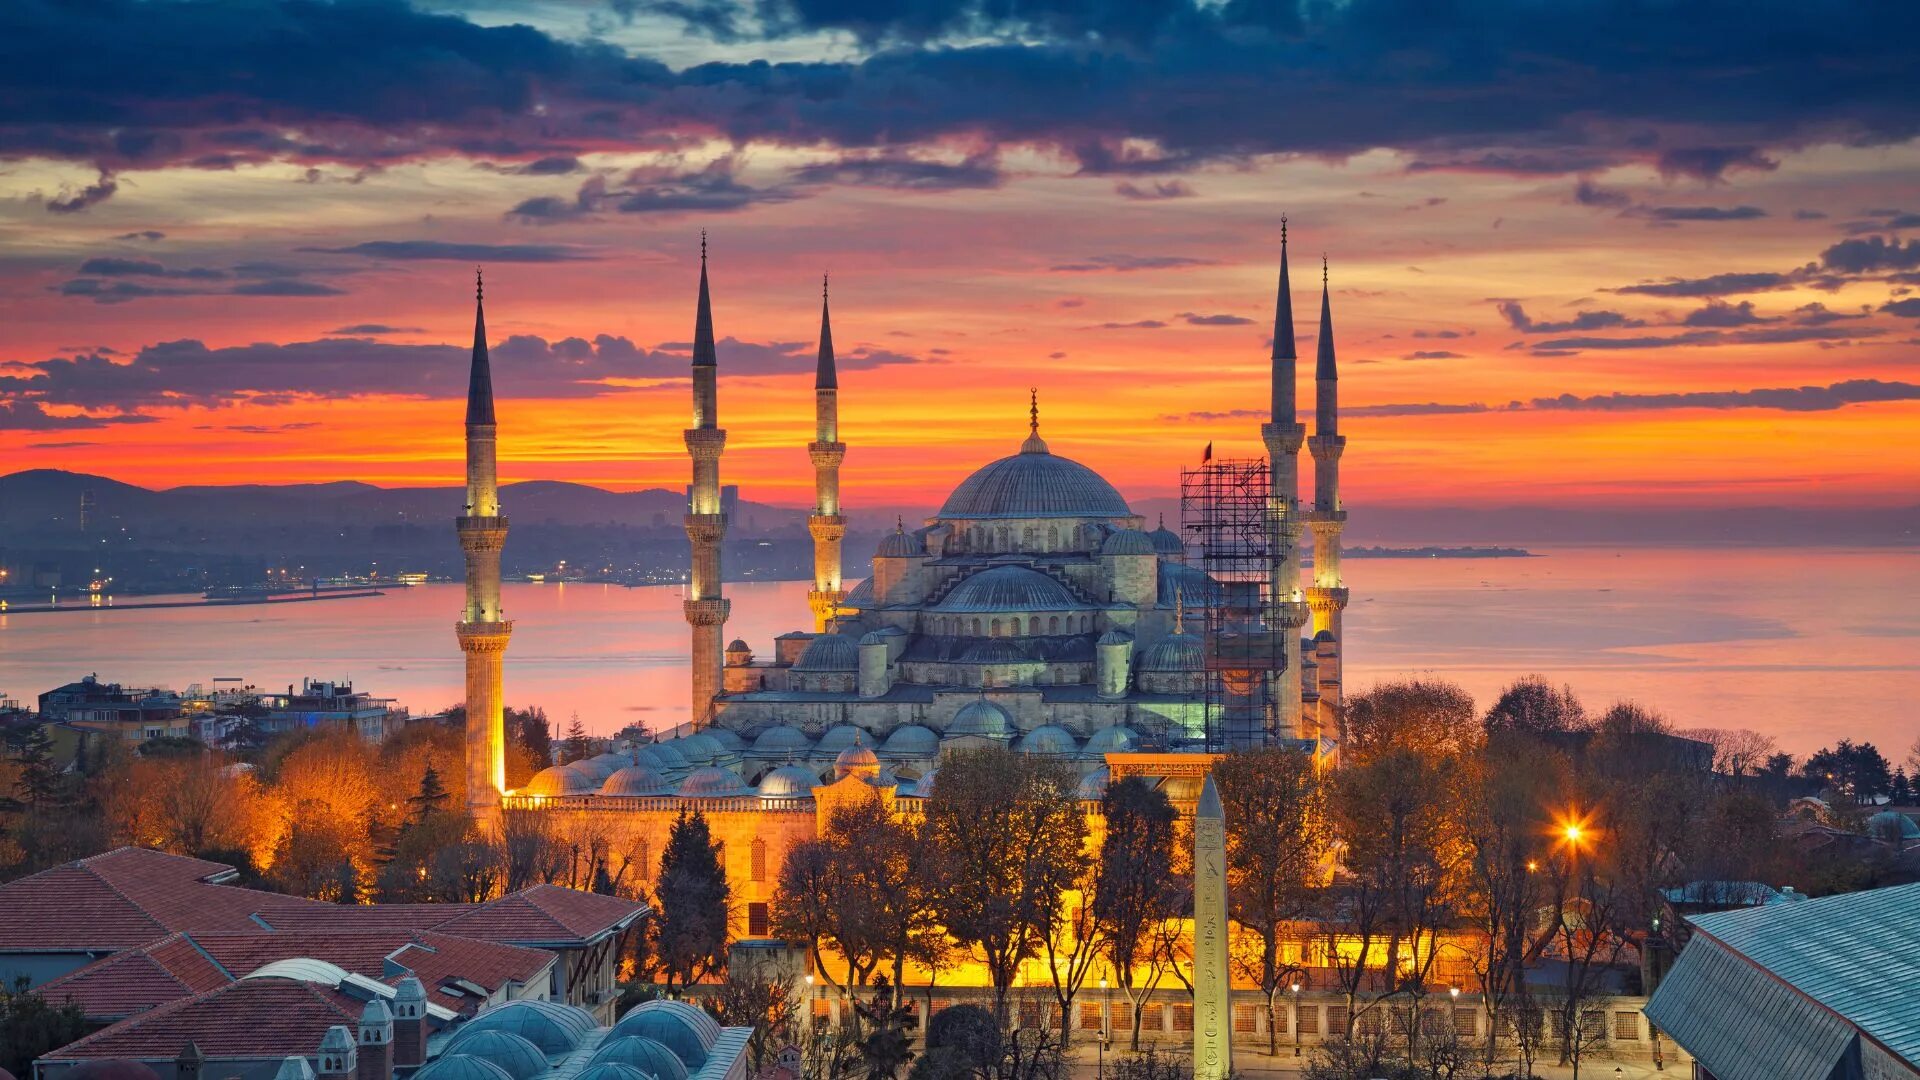 Стамбул старый город Султанахмет. Достопримечательности Стамбула 2022. Стамбул. Голубая мечеть. Разница со стамбулом